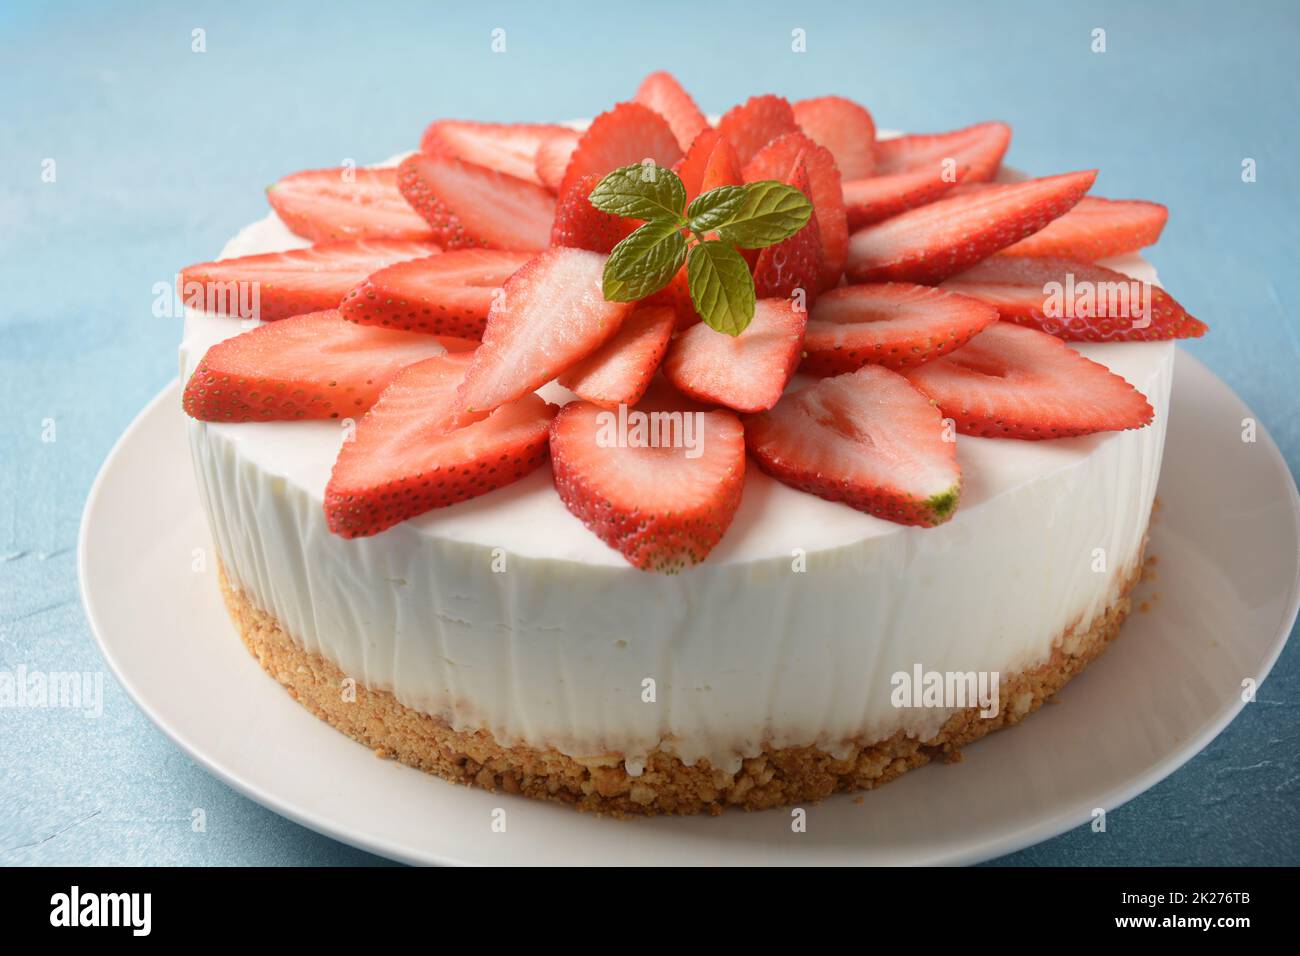 Gâteau au fromage blanc avec fraises garnies de menthe Banque D'Images